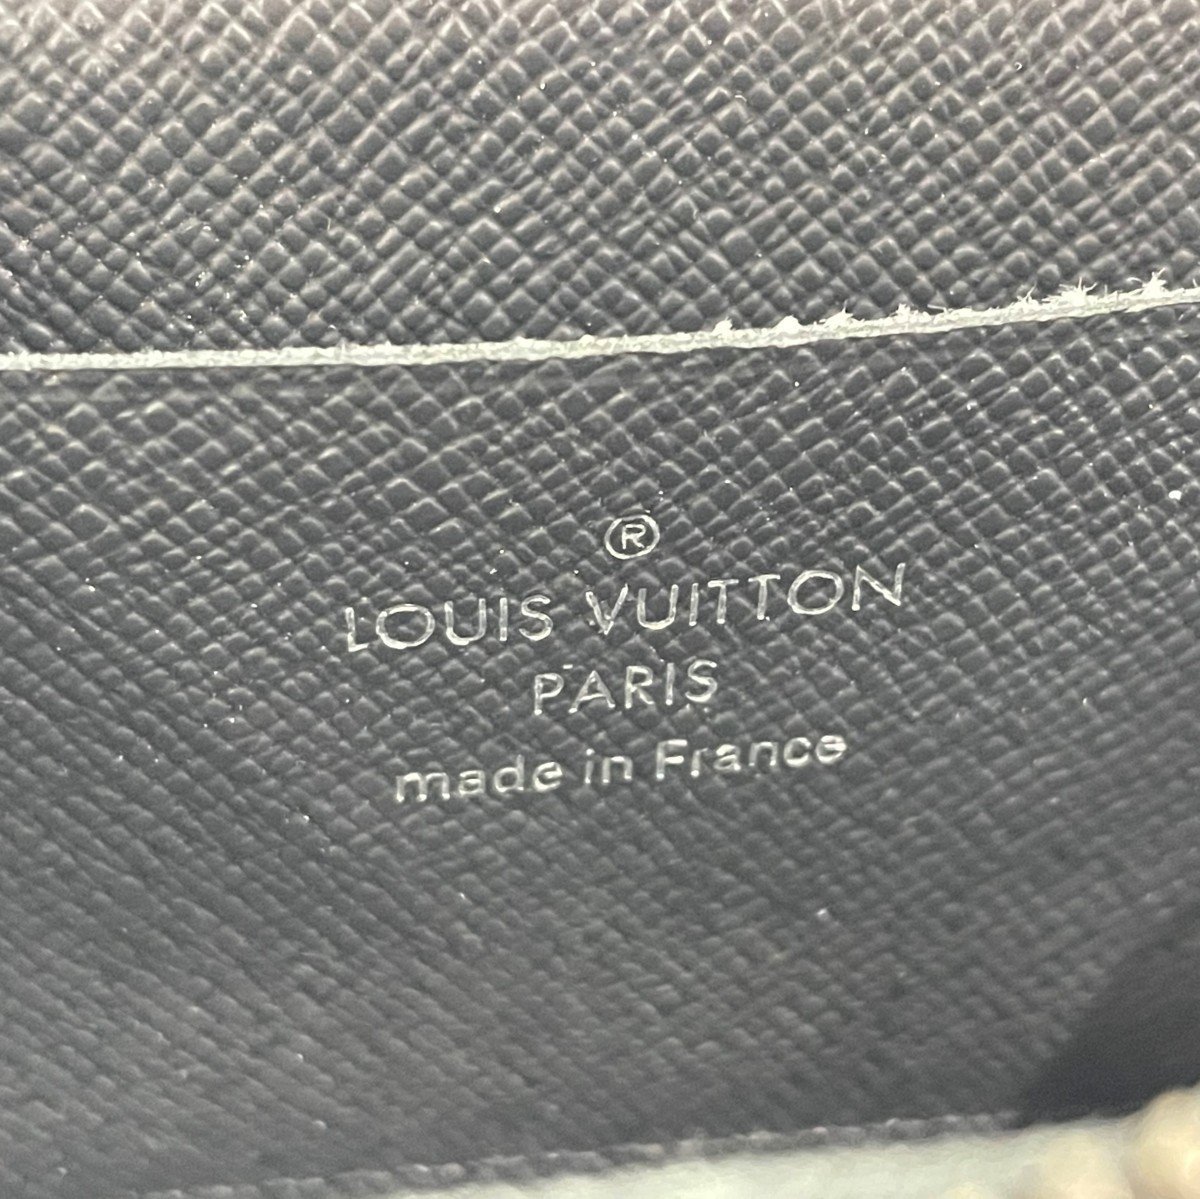 LOUIS VUITTON ルイヴィトン ポルトモネ ジュール M63536 モノグラム 